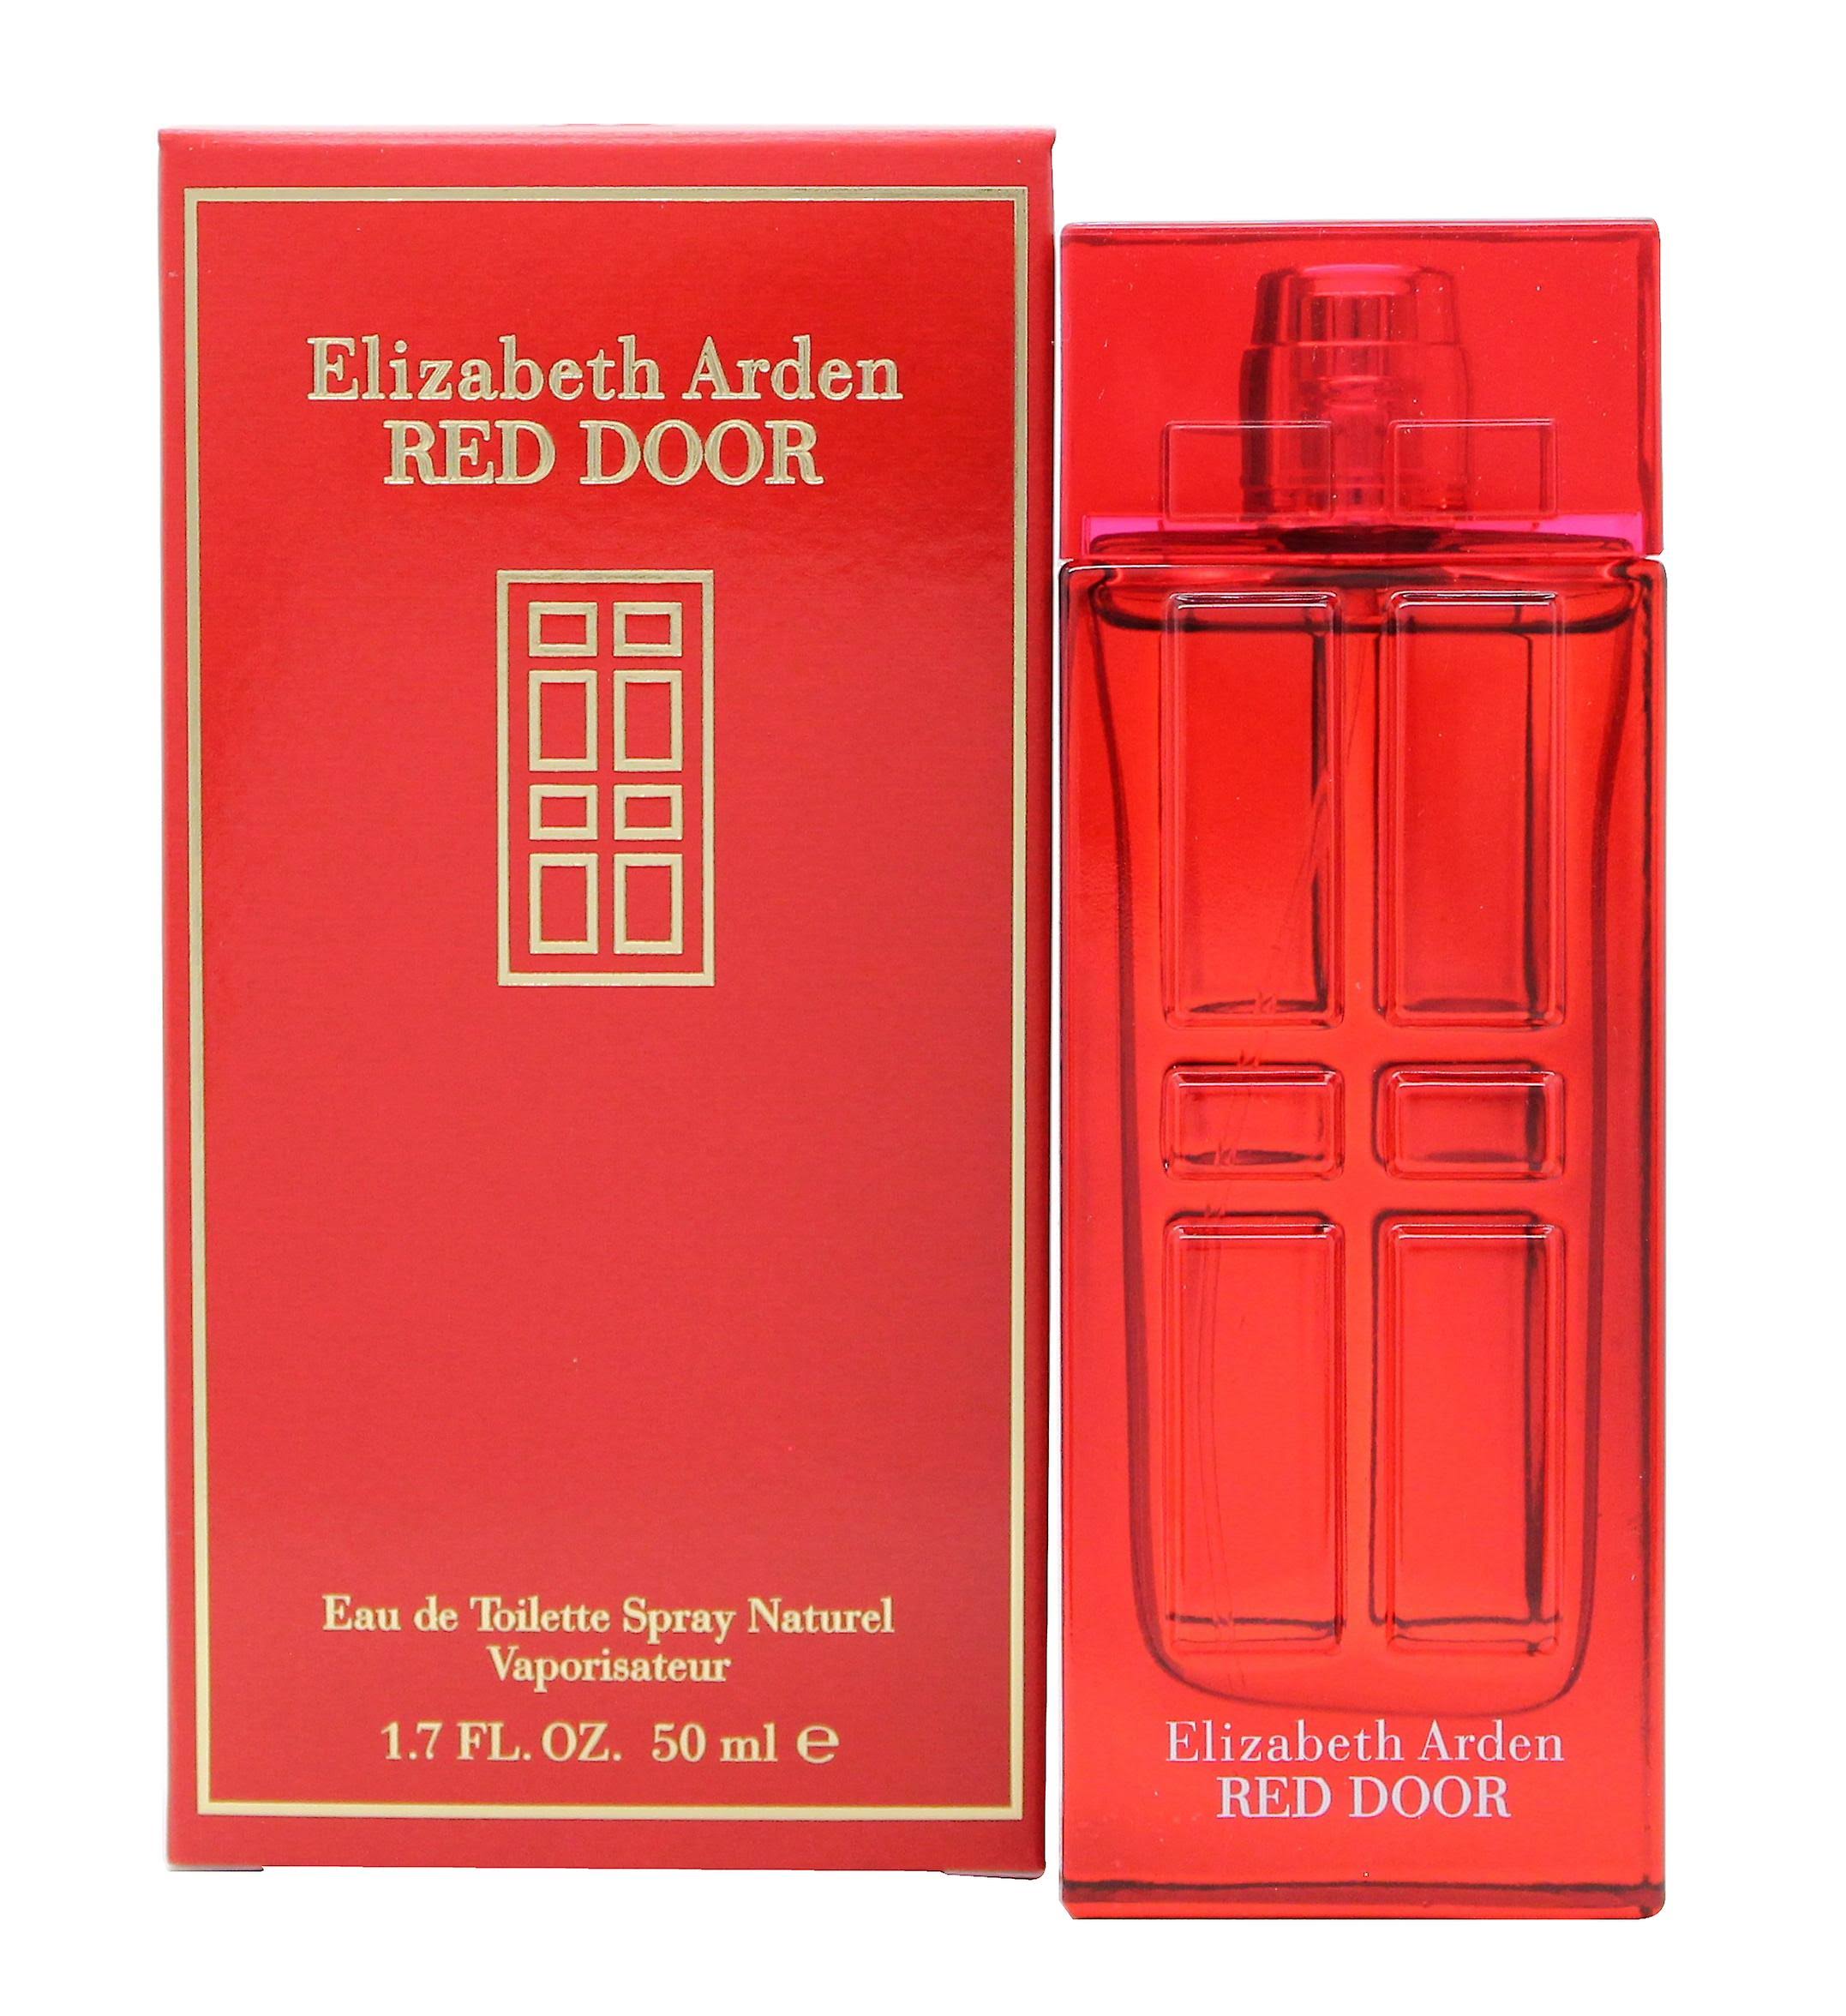 Elizabeth Arden Red Door Perfumes - 50ml